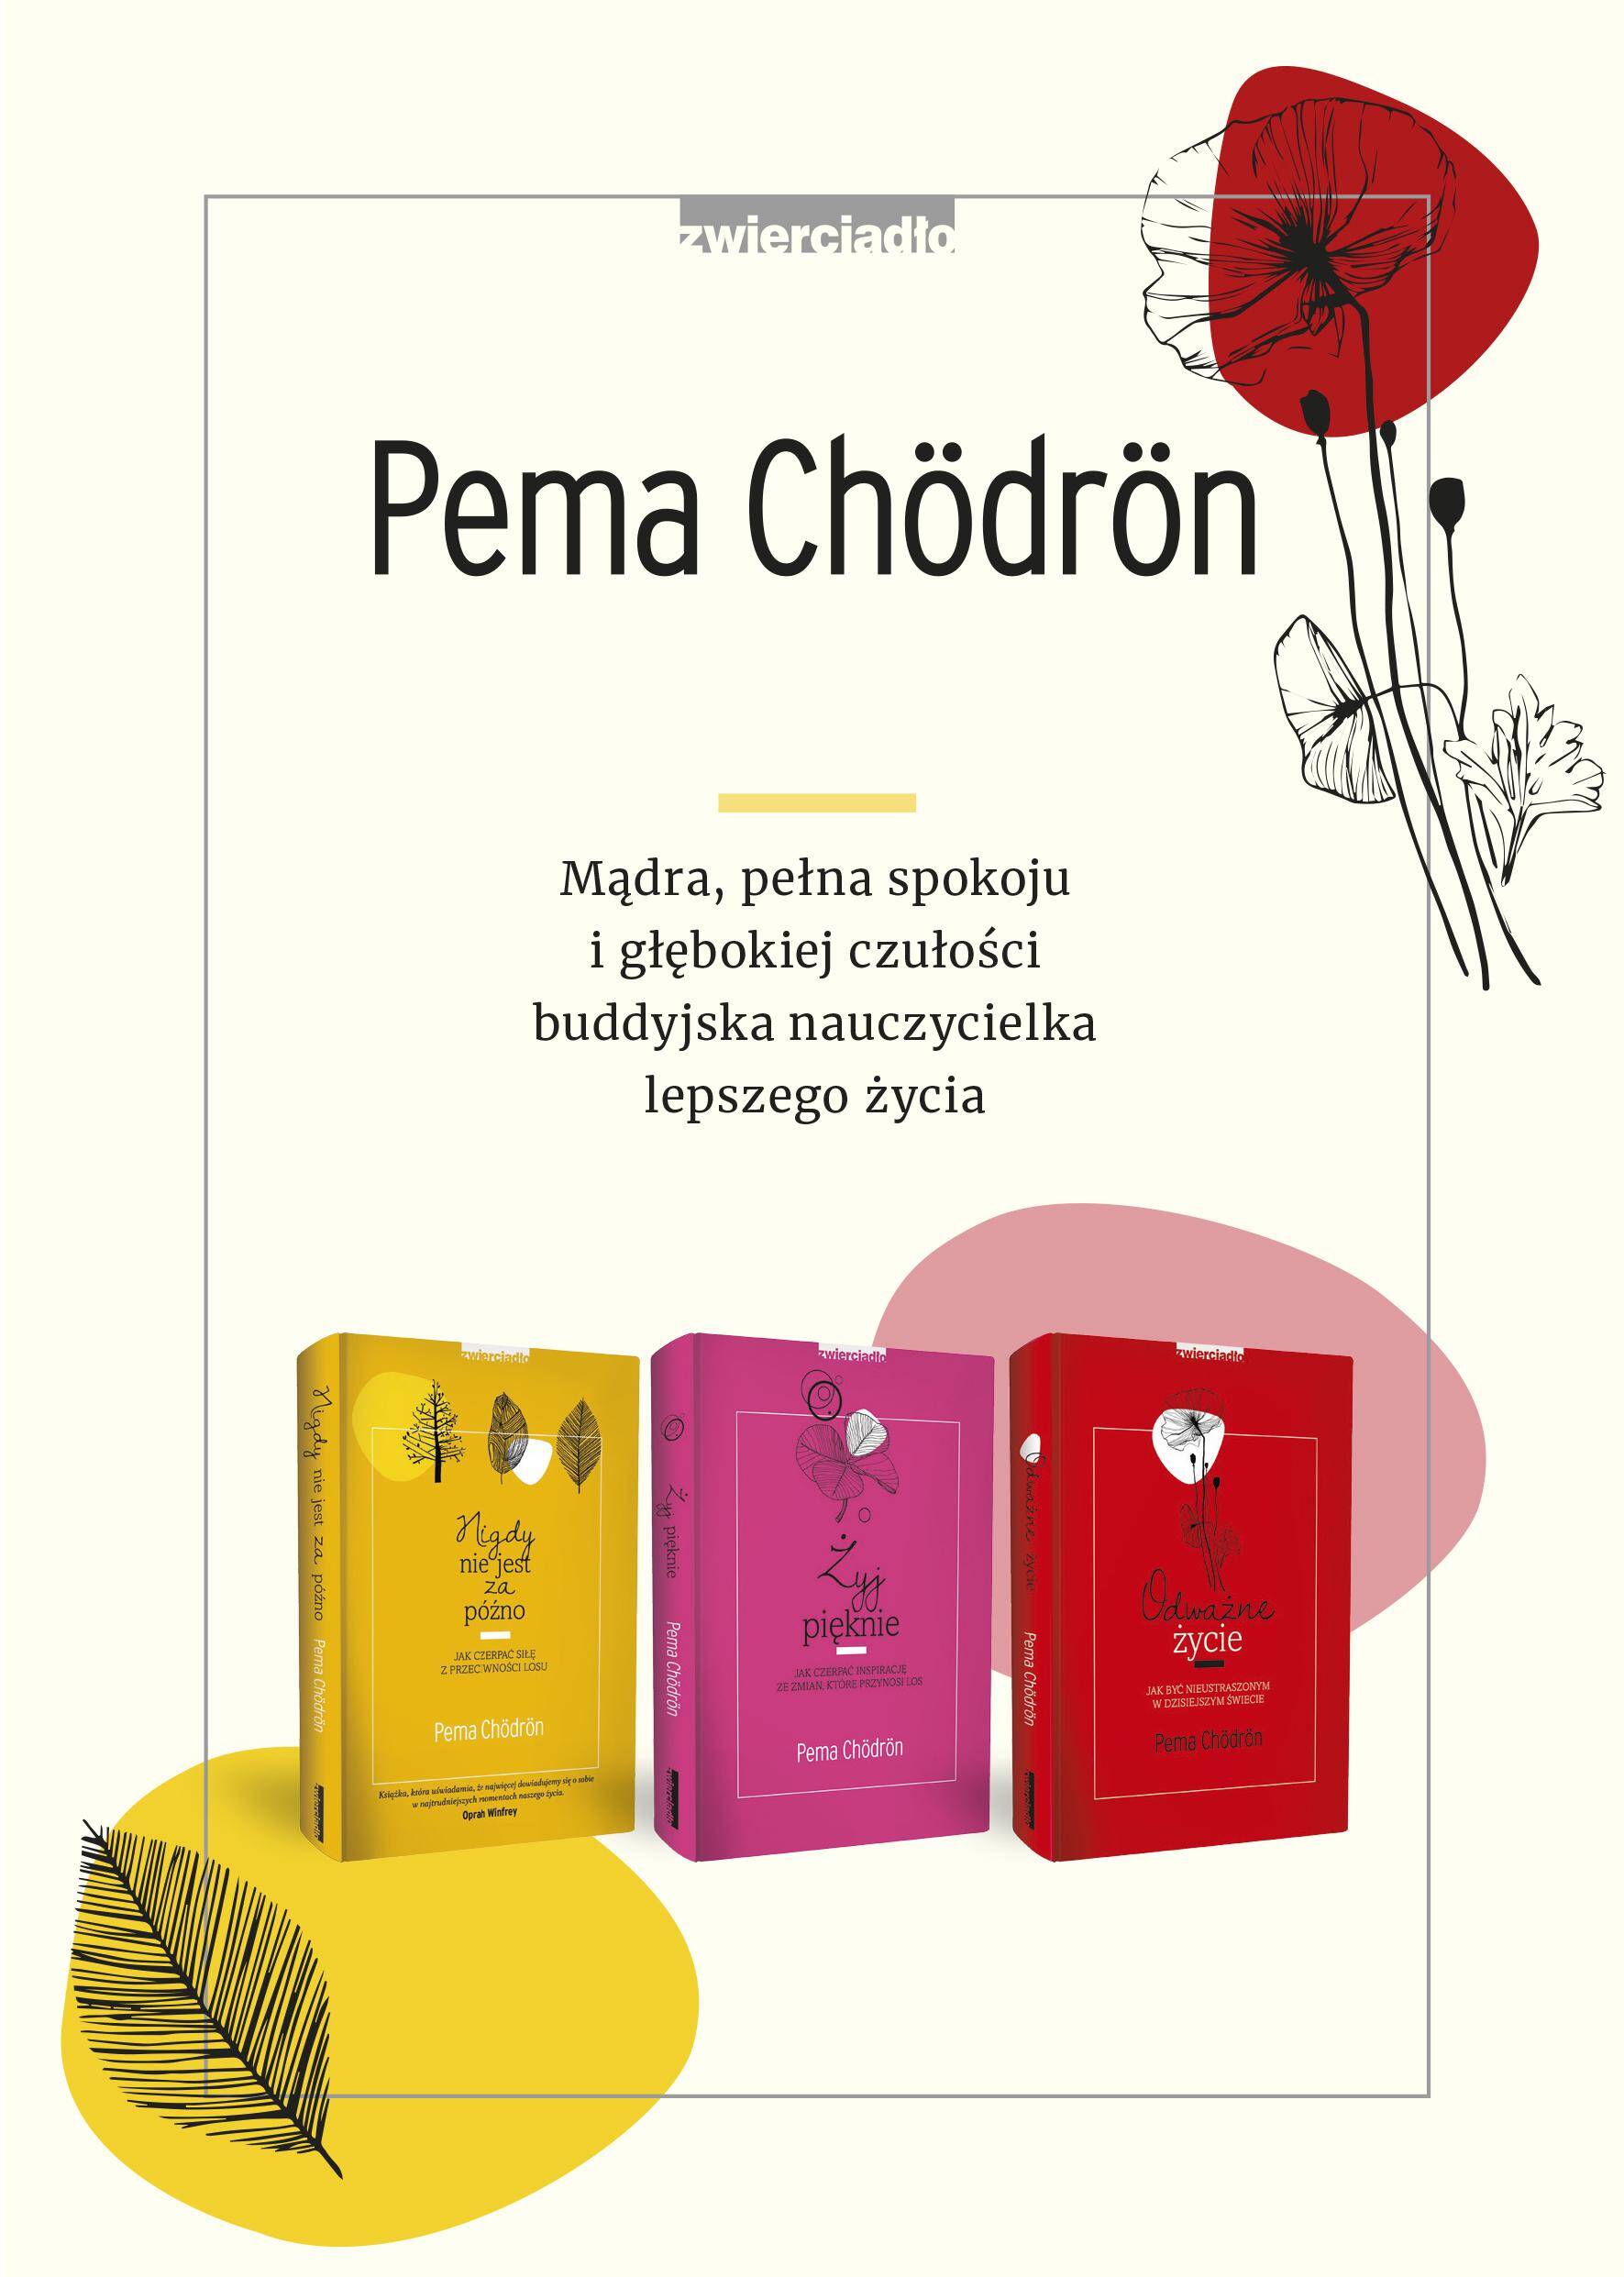 Pakiet Pema Chödrön